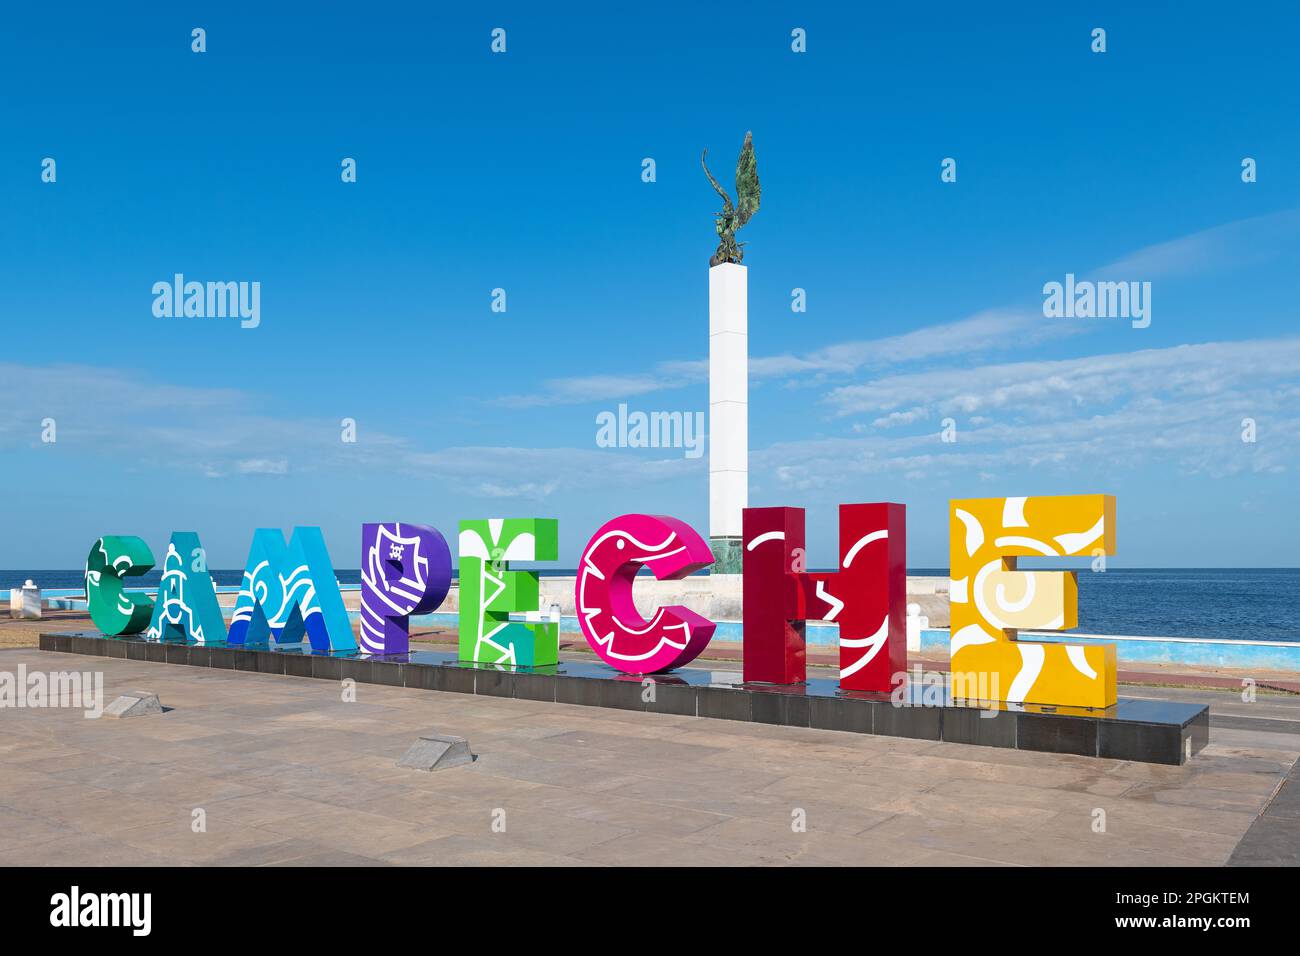 Paseo marítimo de la ciudad de Campeche y señal de nombre, México. Foto de stock